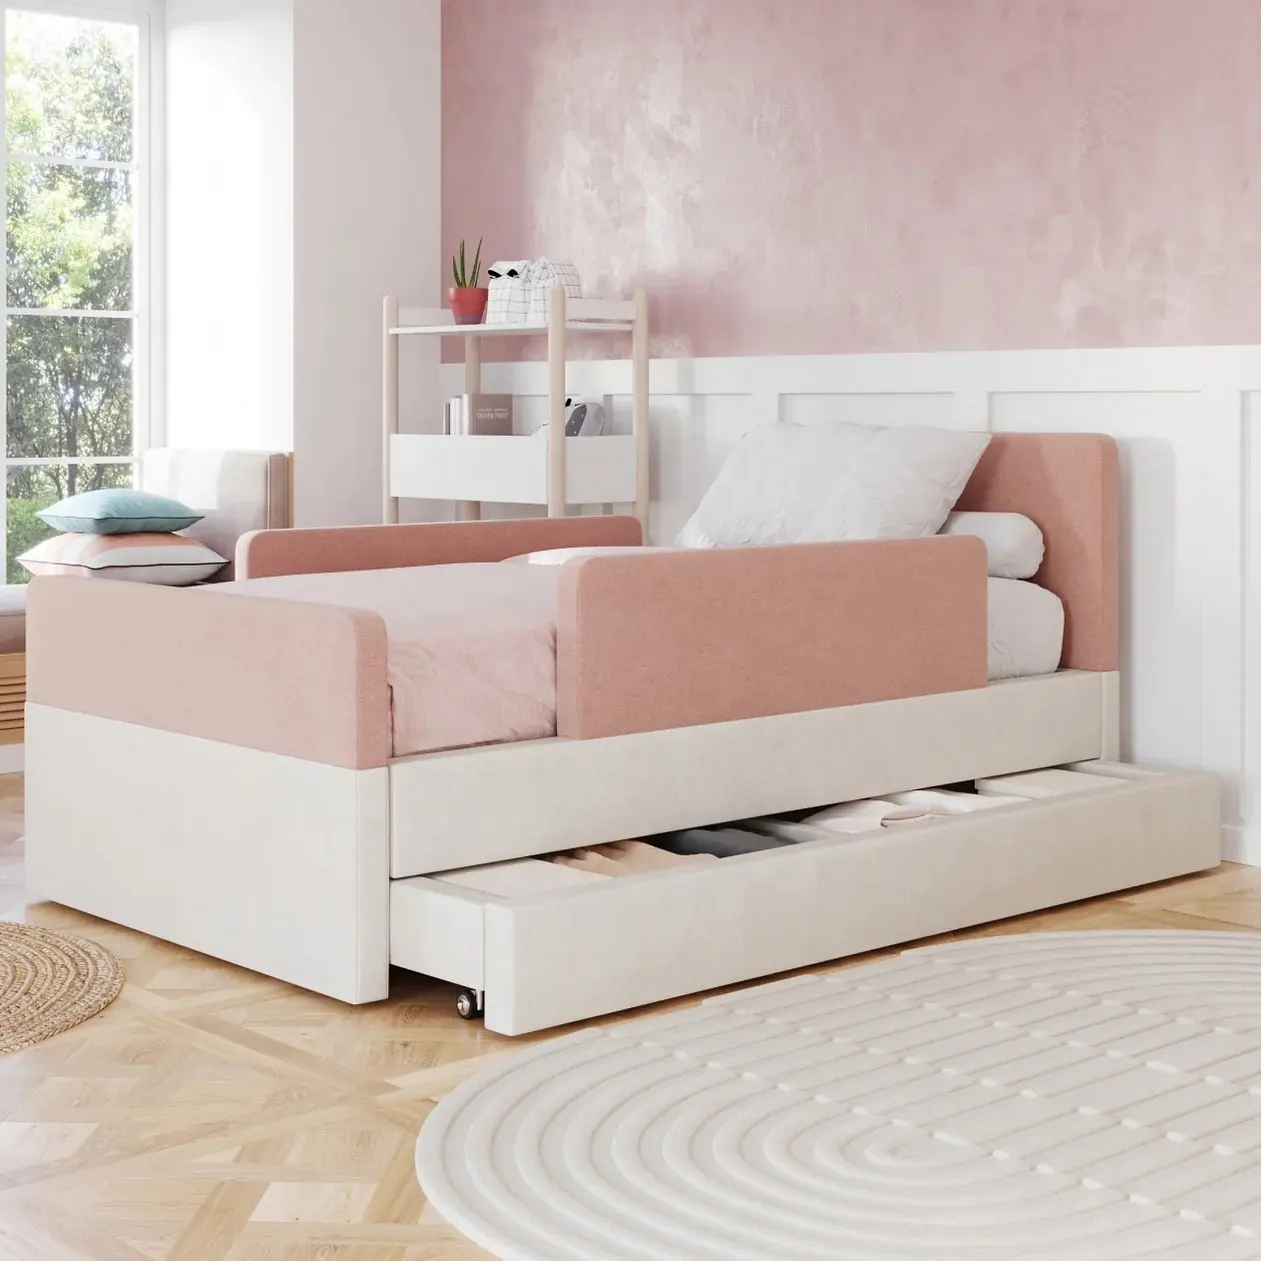 NOVA lit pour tout-petits avec tiroirs de rangement au design moderne lit gigogne pour enfants pour chambre d'enfants se convertit en lit de jour